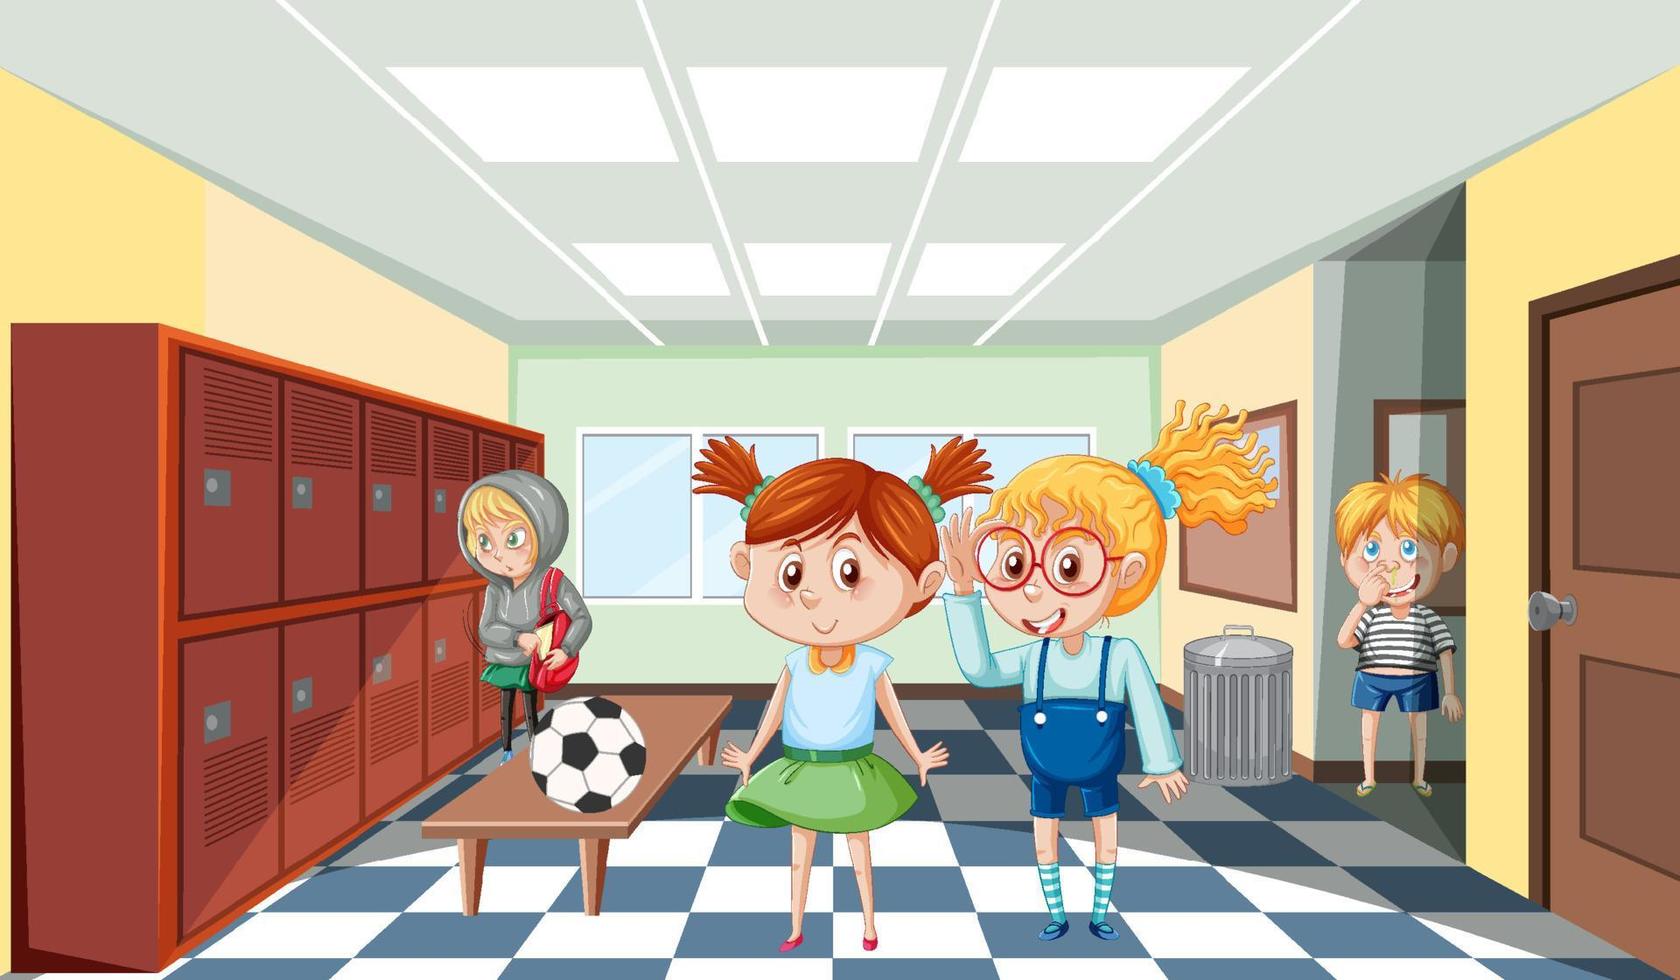 cena da escola com o personagem de desenho animado dos alunos vetor